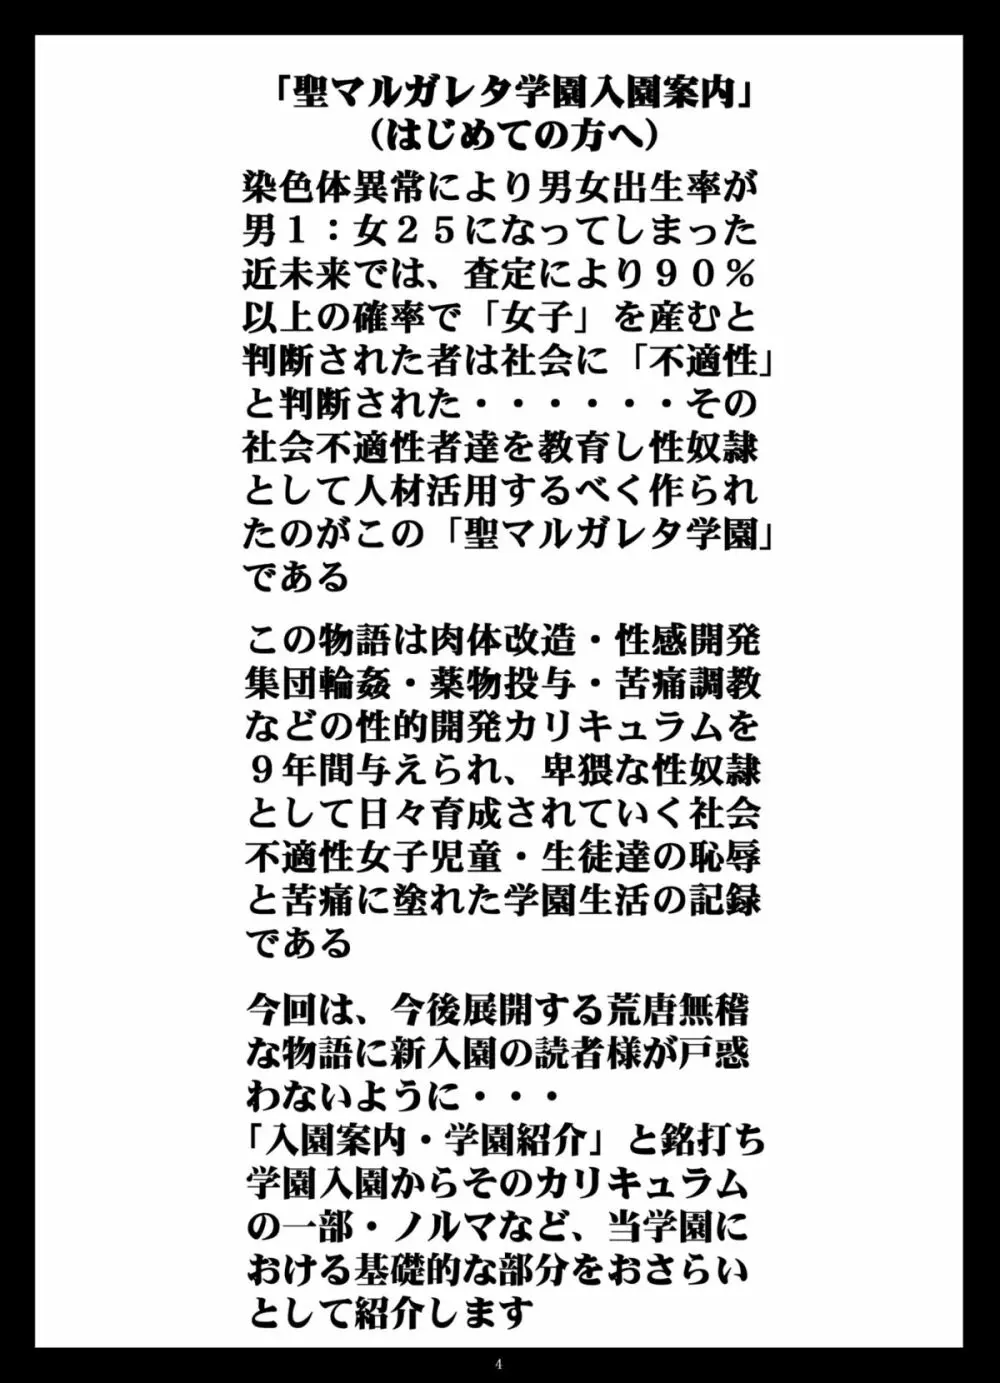 月刊マルガレタ創刊準備号「入園案内」vol.000 4ページ